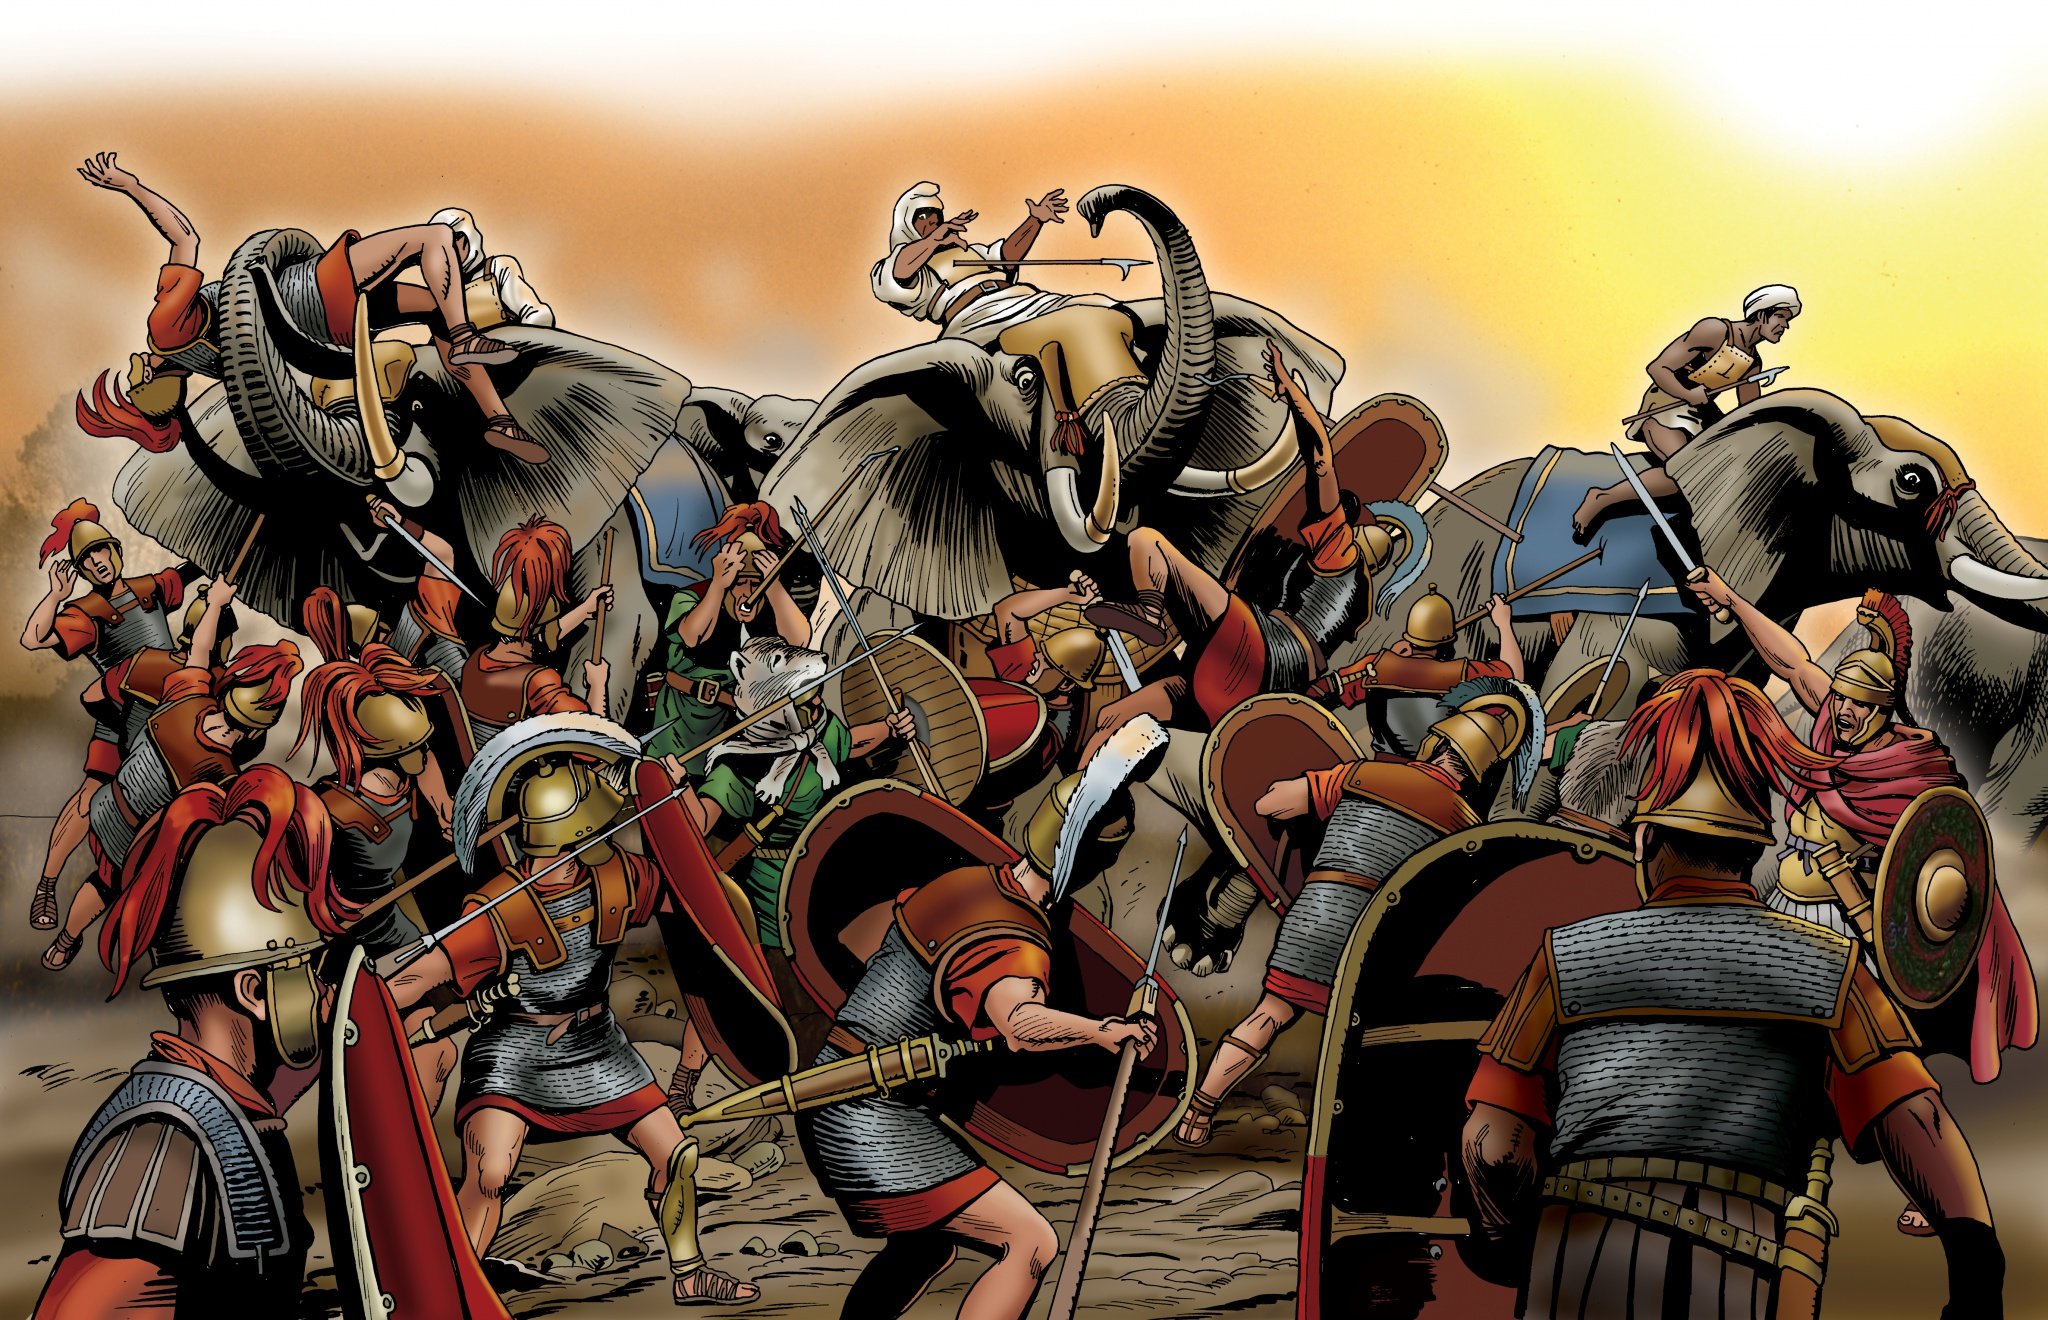 Войны между римлянами. Битва при заме 202 г. до н.э.. Битва при заме Карфаген против Рима. Римские легионеры арт Карфаген. Карфаген против Рима арт.